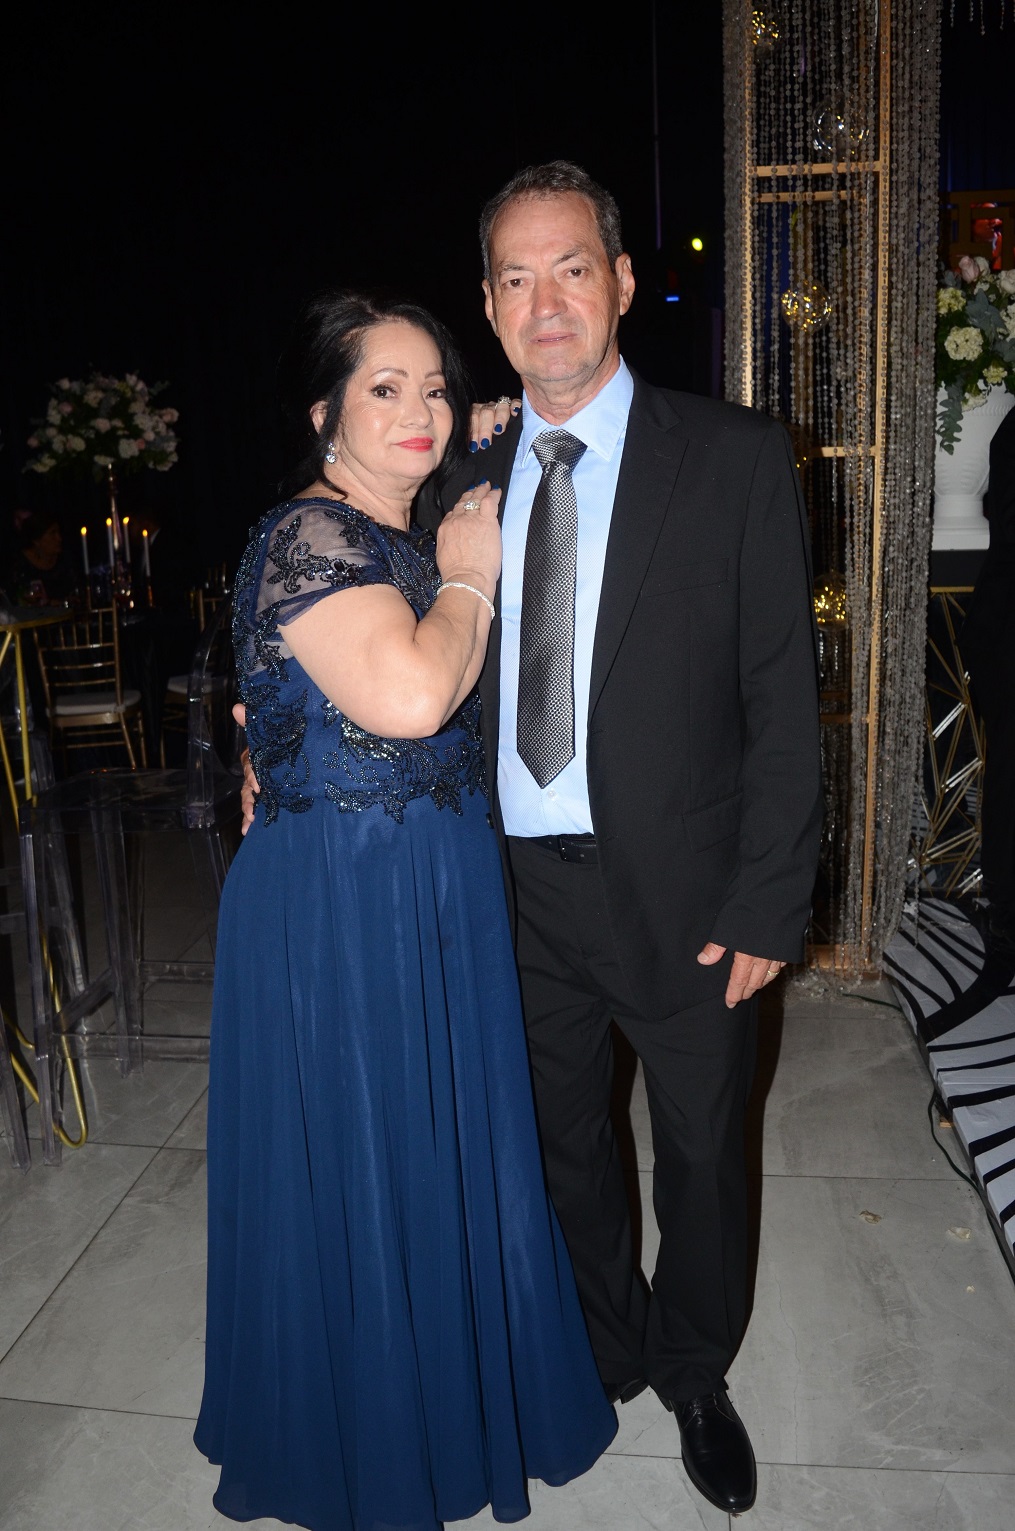 Darío Irías Turcios y Paola Mancía se dan el “sí, quiero” en una boda inolvidable